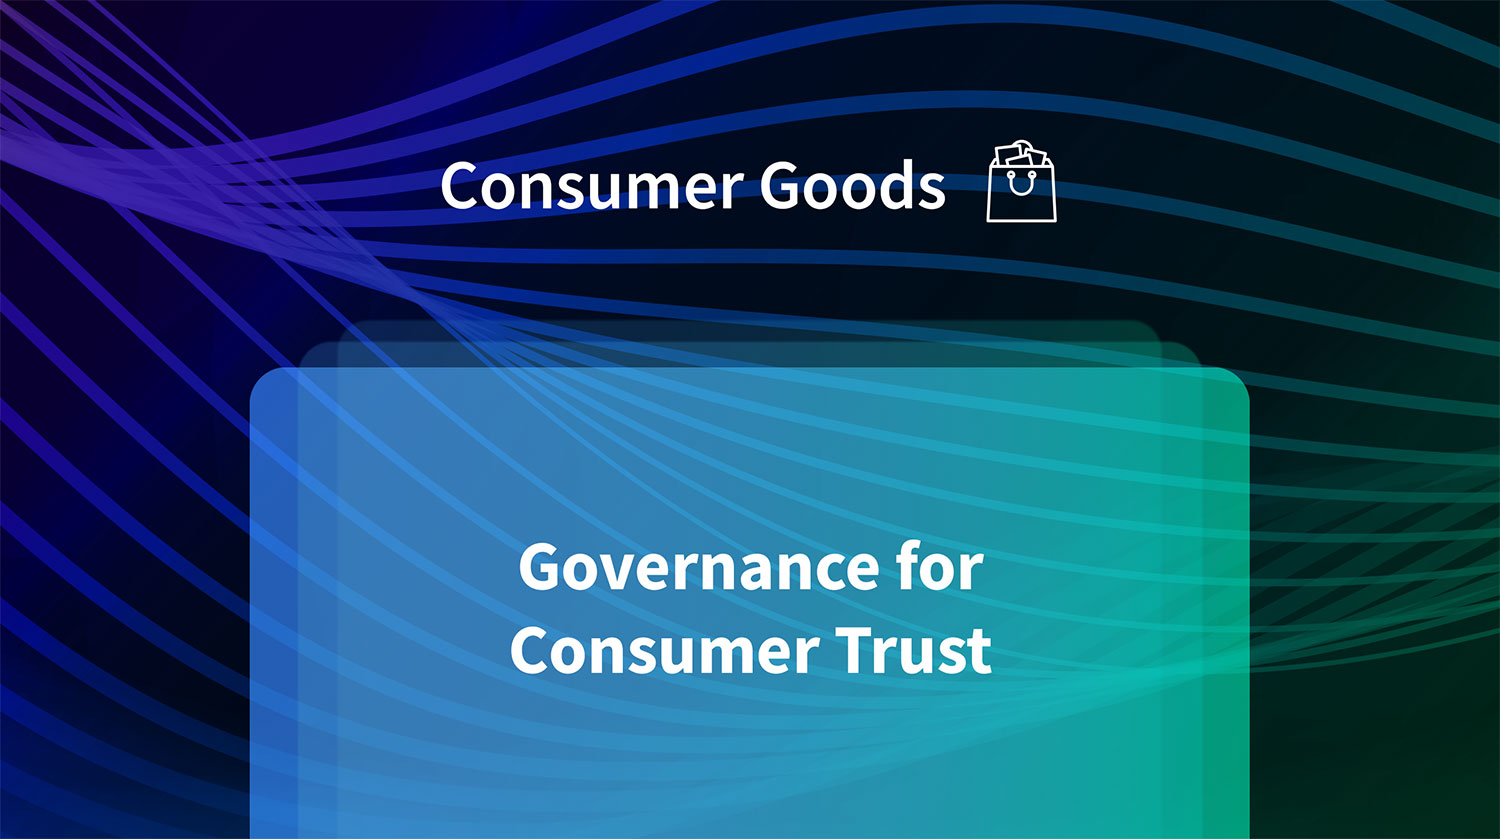 Governance for Consumer Trust